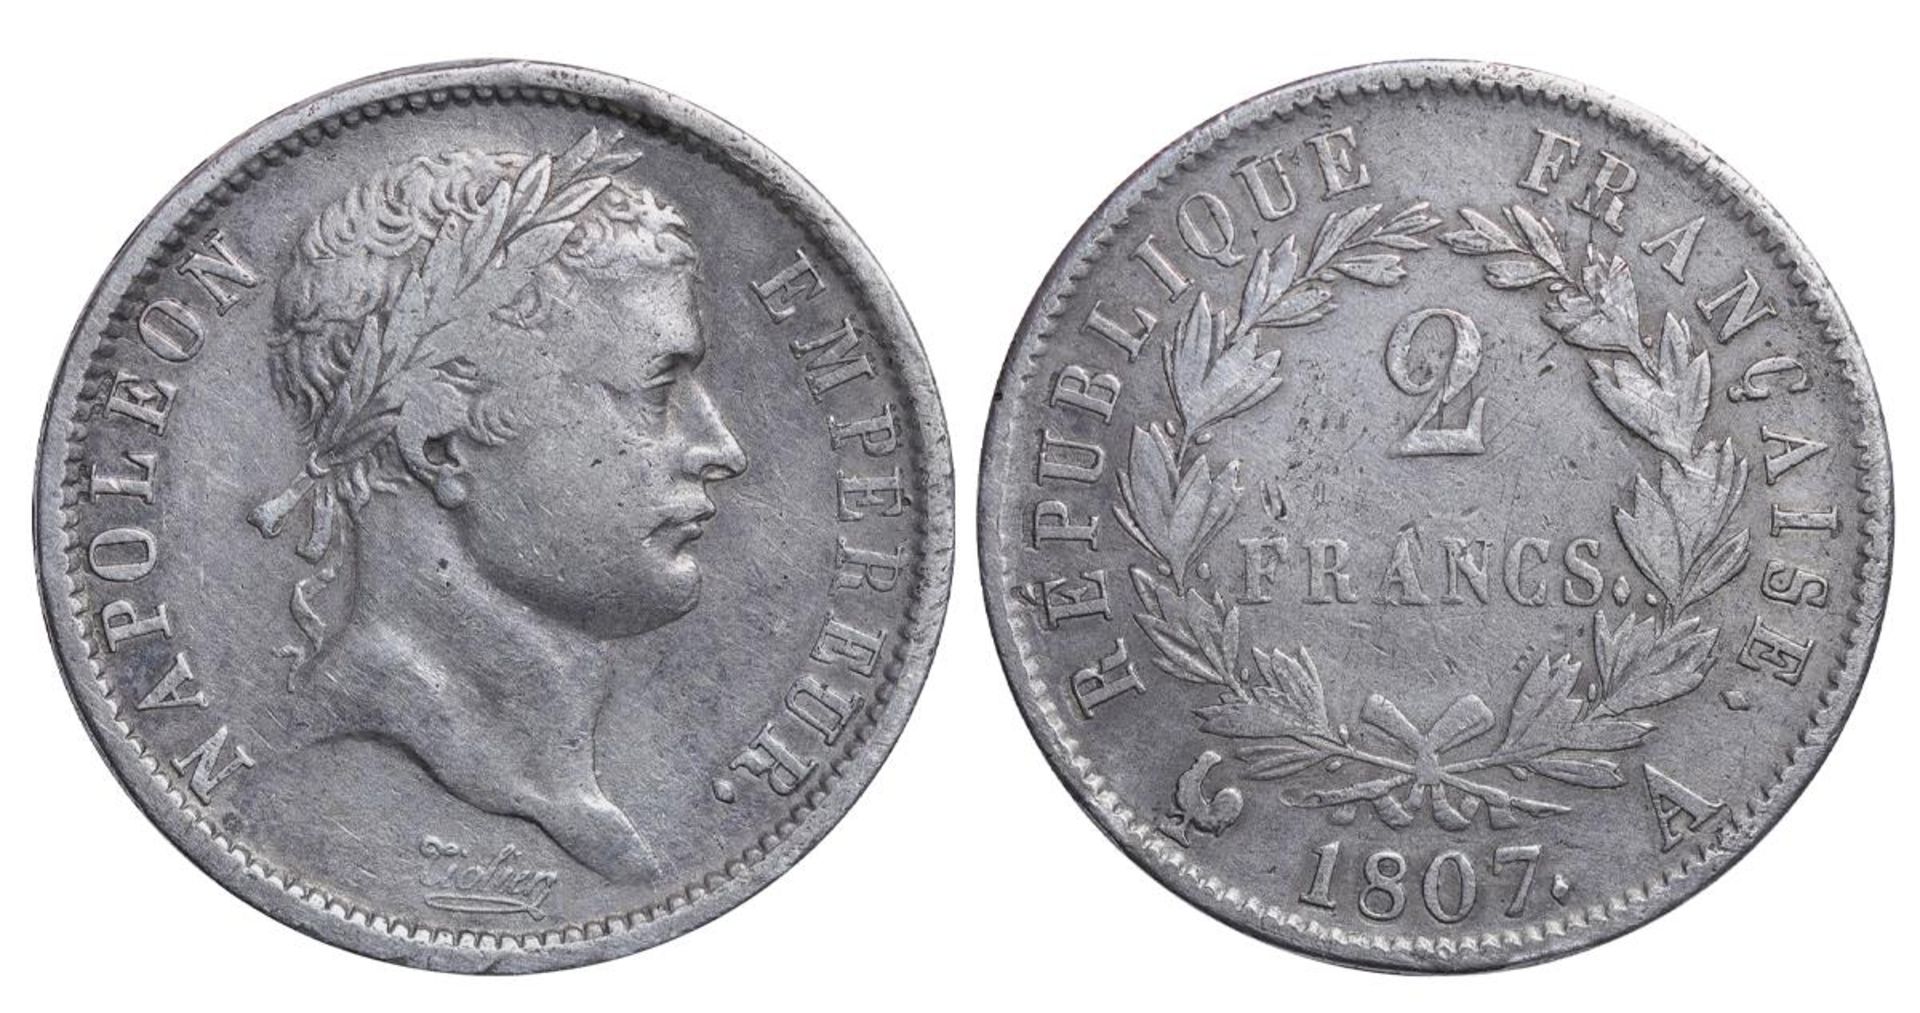 France, 2 Francs, 1807 year, A